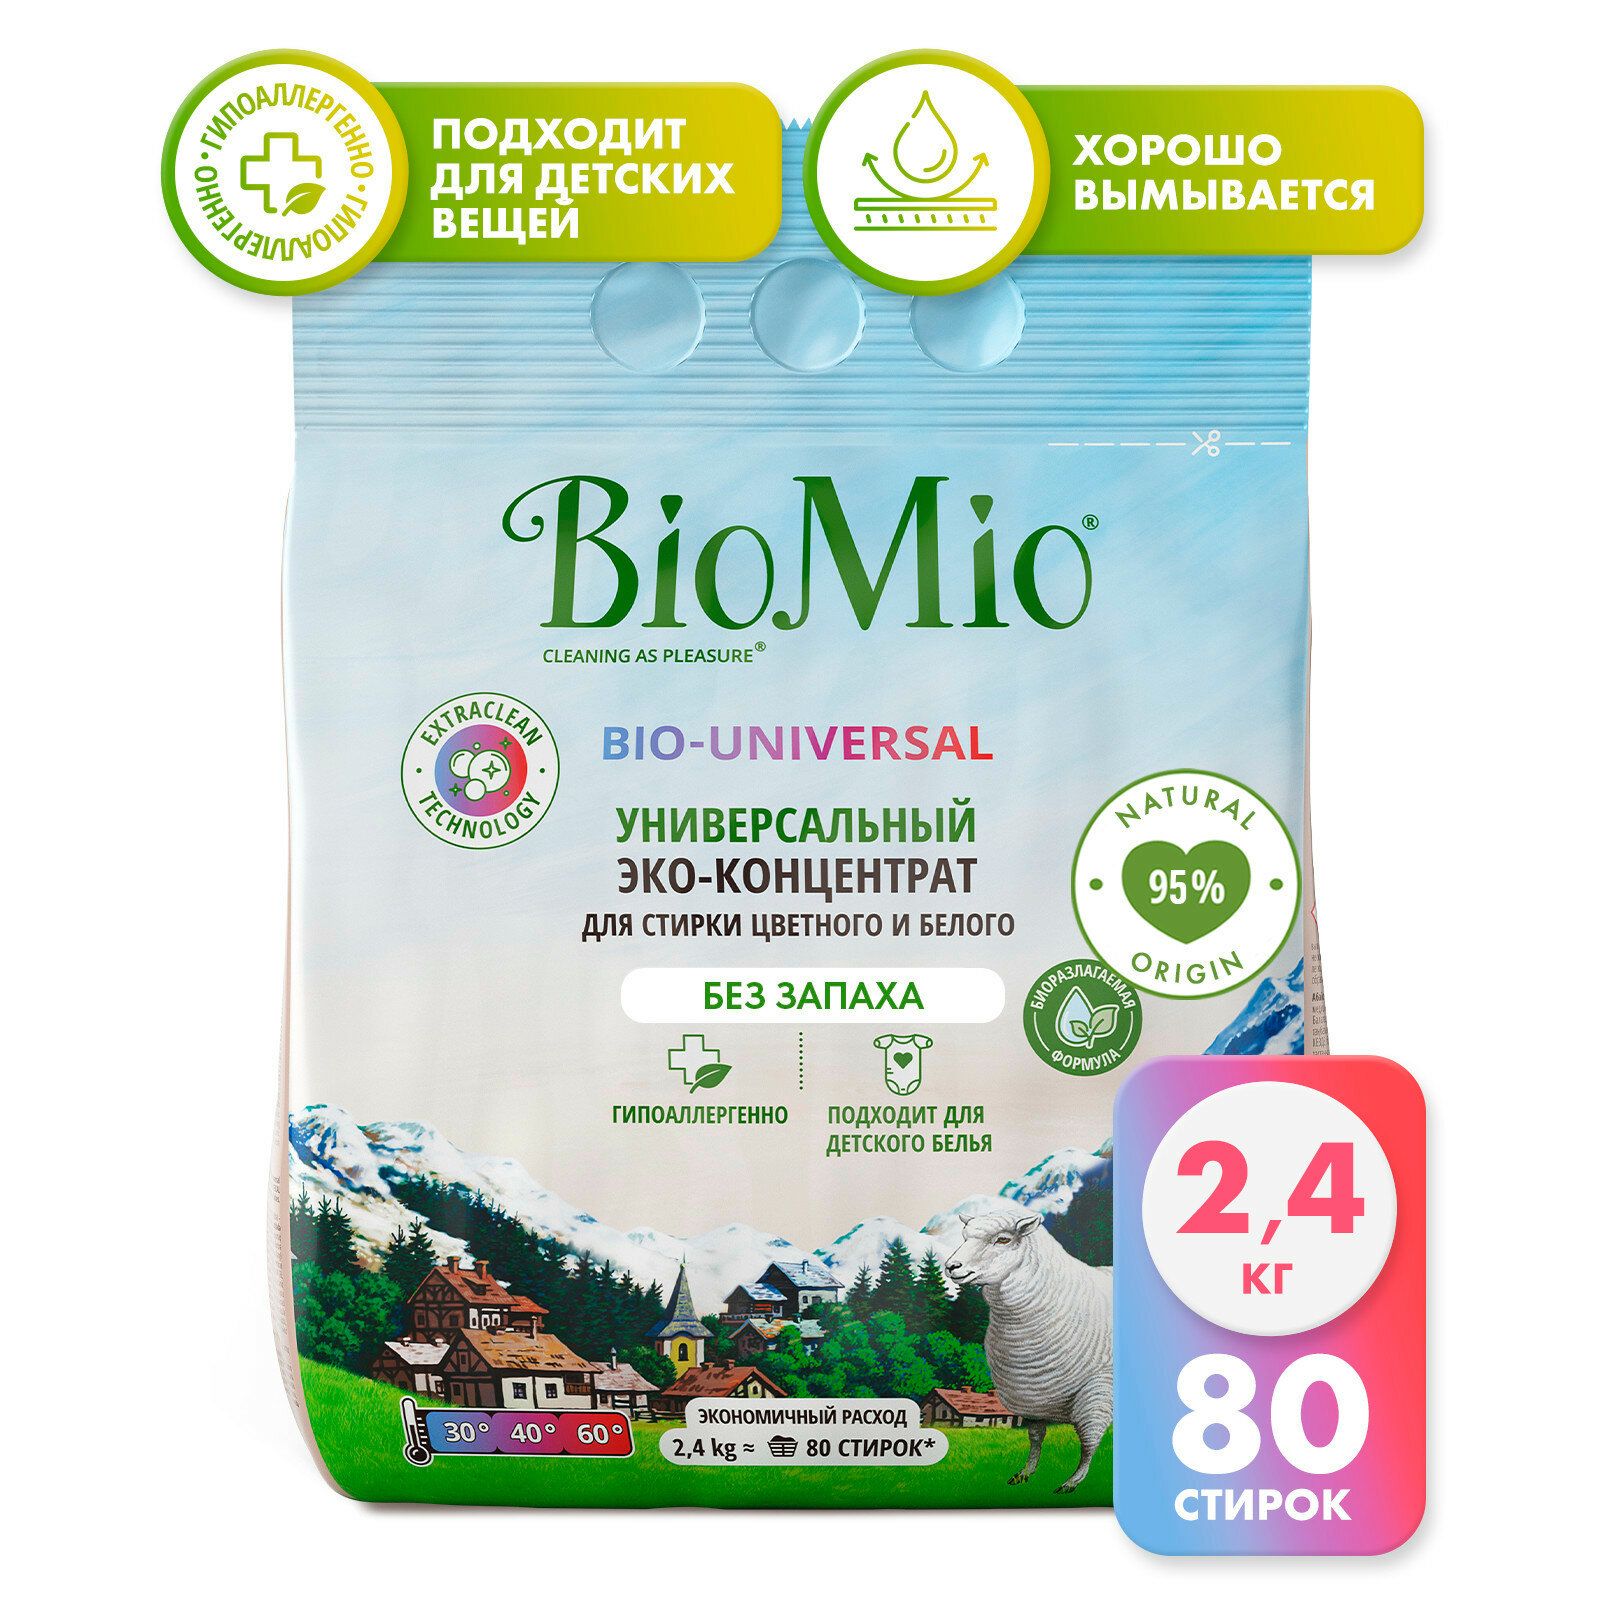 Универсальный экологичный порошок BioMio для стирки цветного и белого белья. Концентрат. Без запаха, 2 400 г